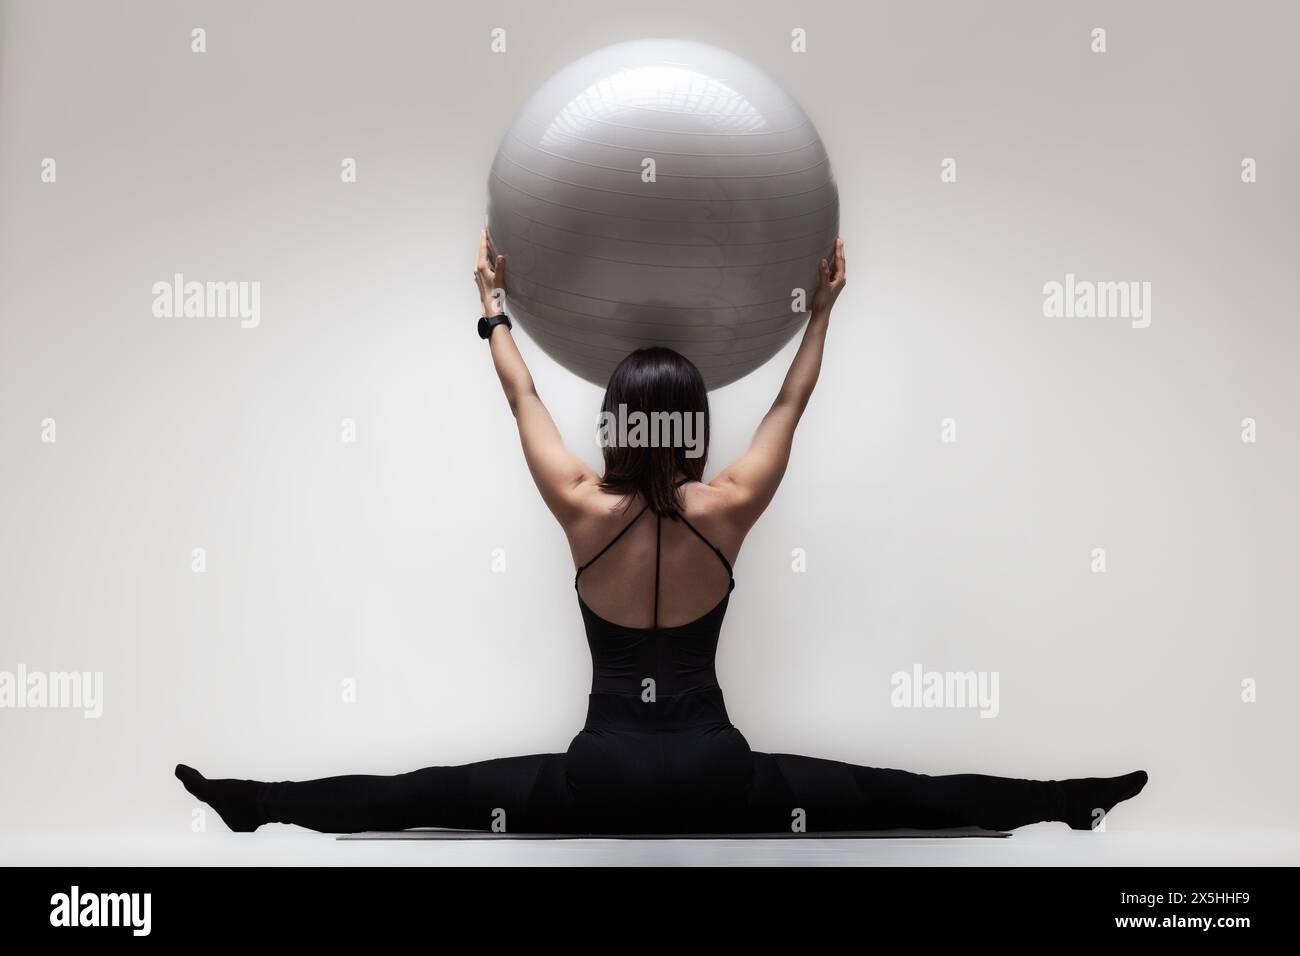 Eine junge Frau in gespaltener Position mit einem großen Fitnessball für Balance und Flexibilität vor neutralem Hintergrund. Stockfoto